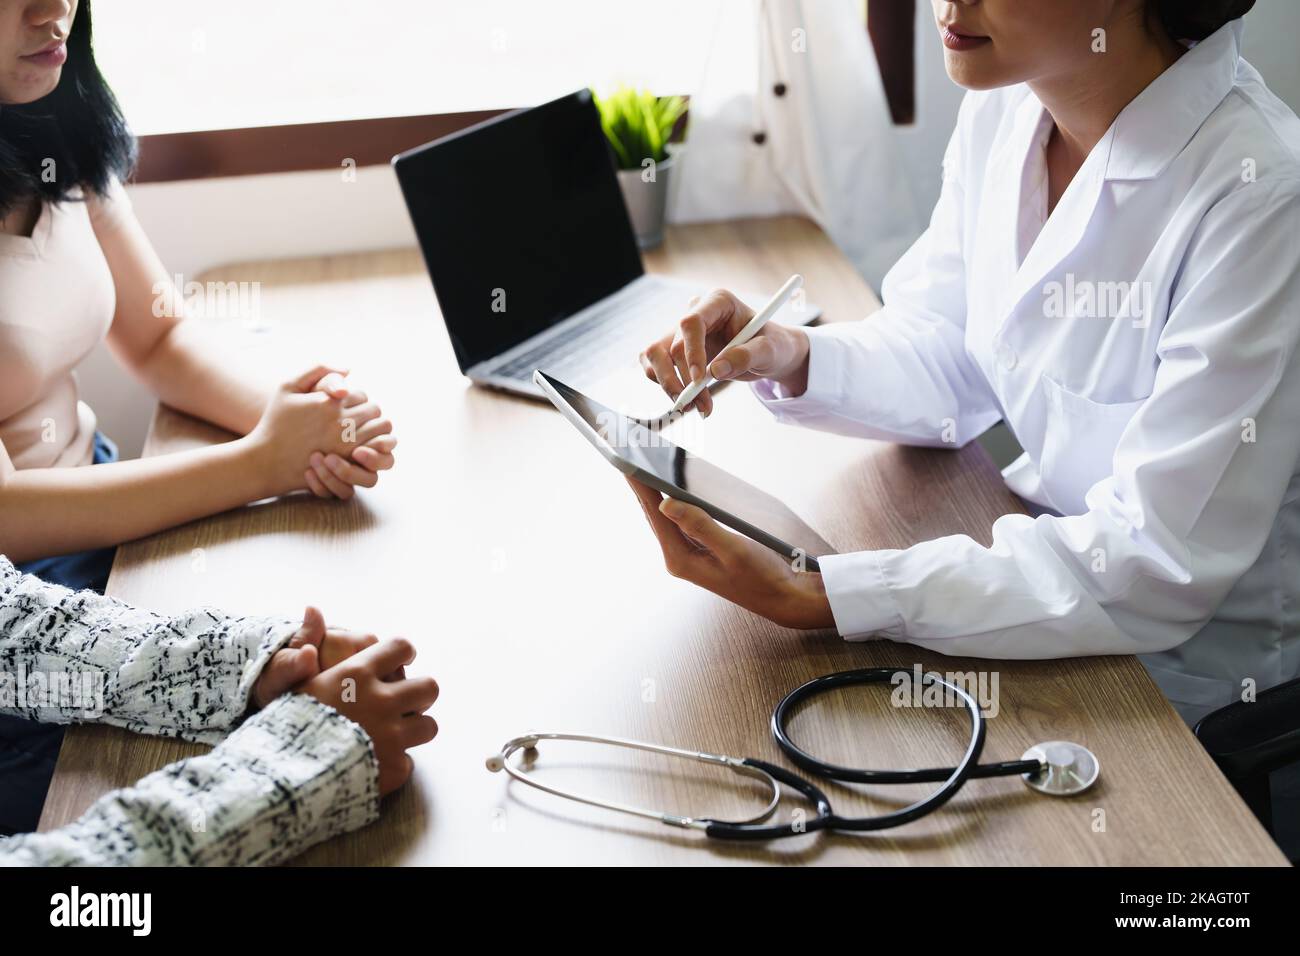 Portrait d'un médecin conseillant des clients sur des problèmes de santé tenant une tablette pour travailler et parlant aux patients qui viennent à un traitement Banque D'Images